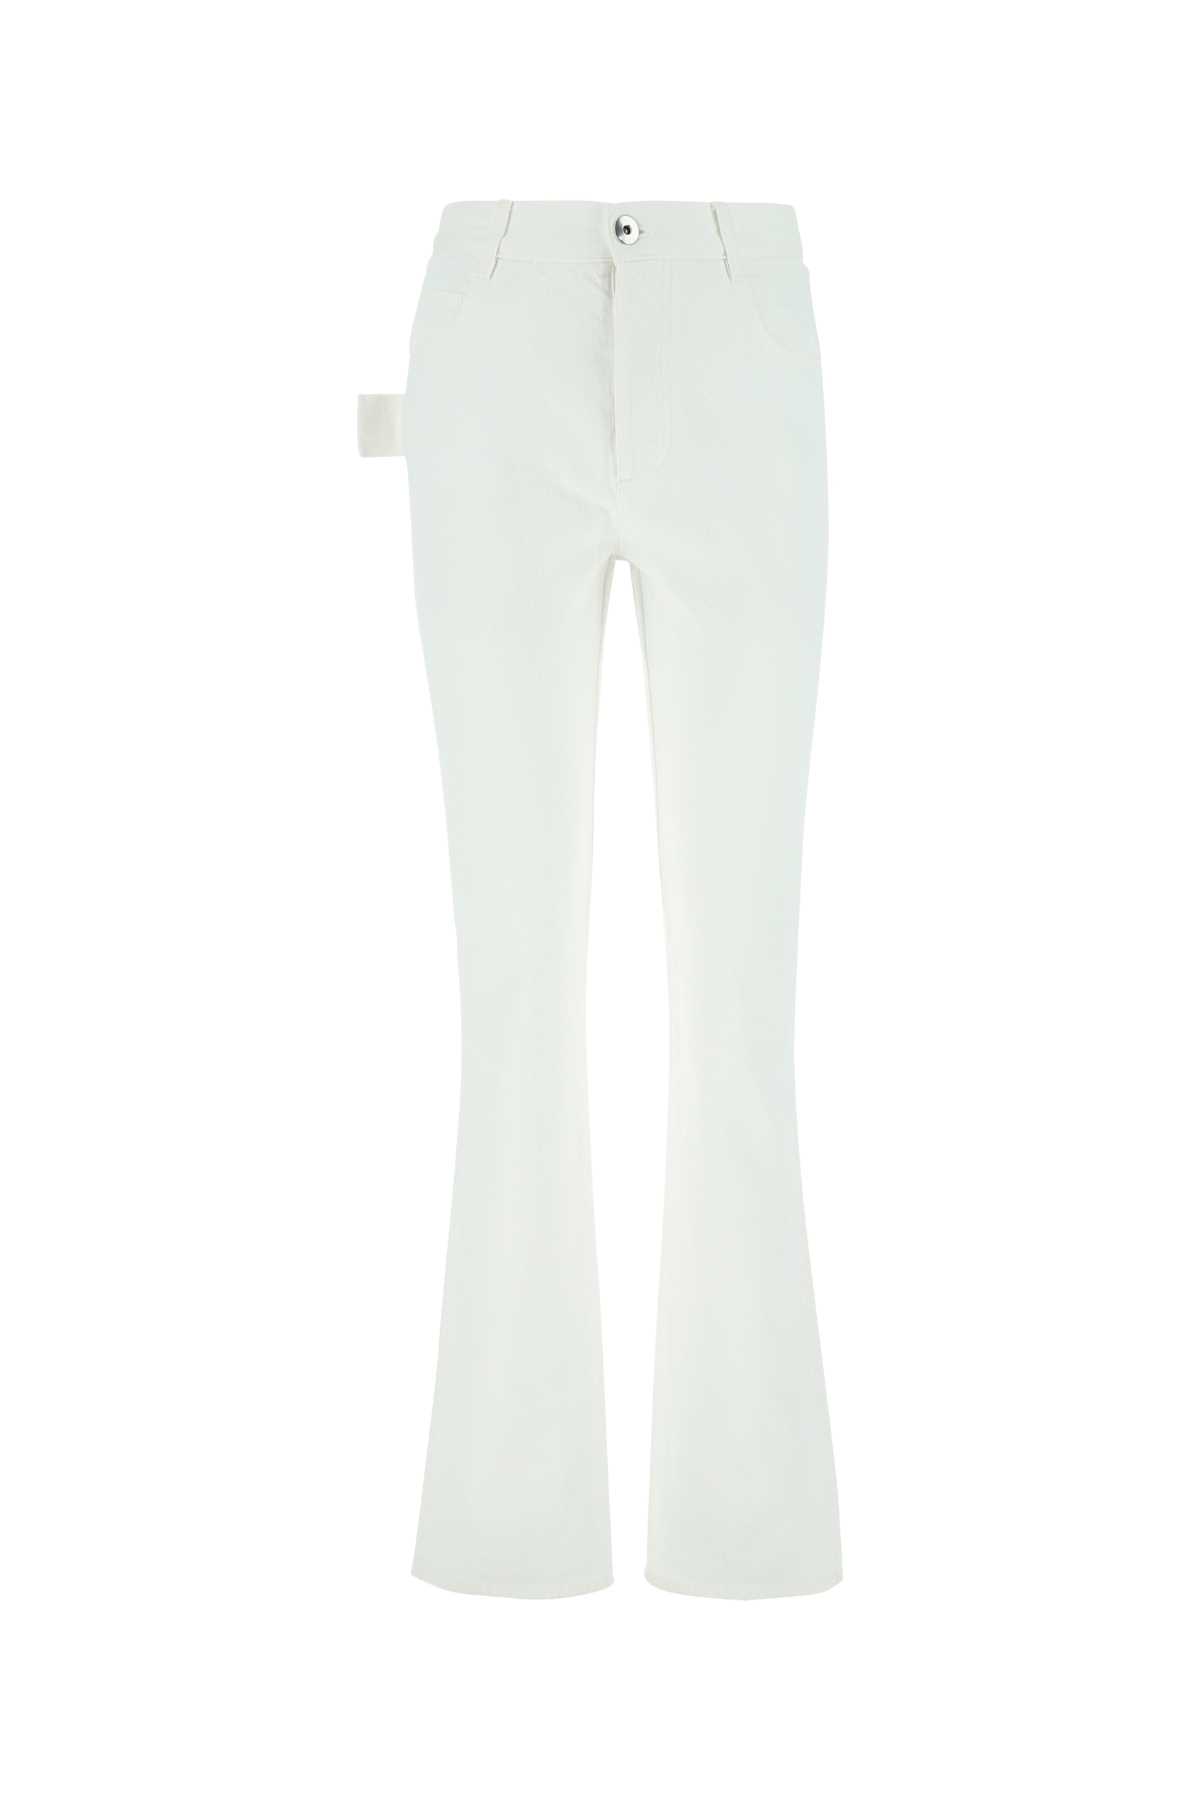 Bottega Veneta White Denim Jeans